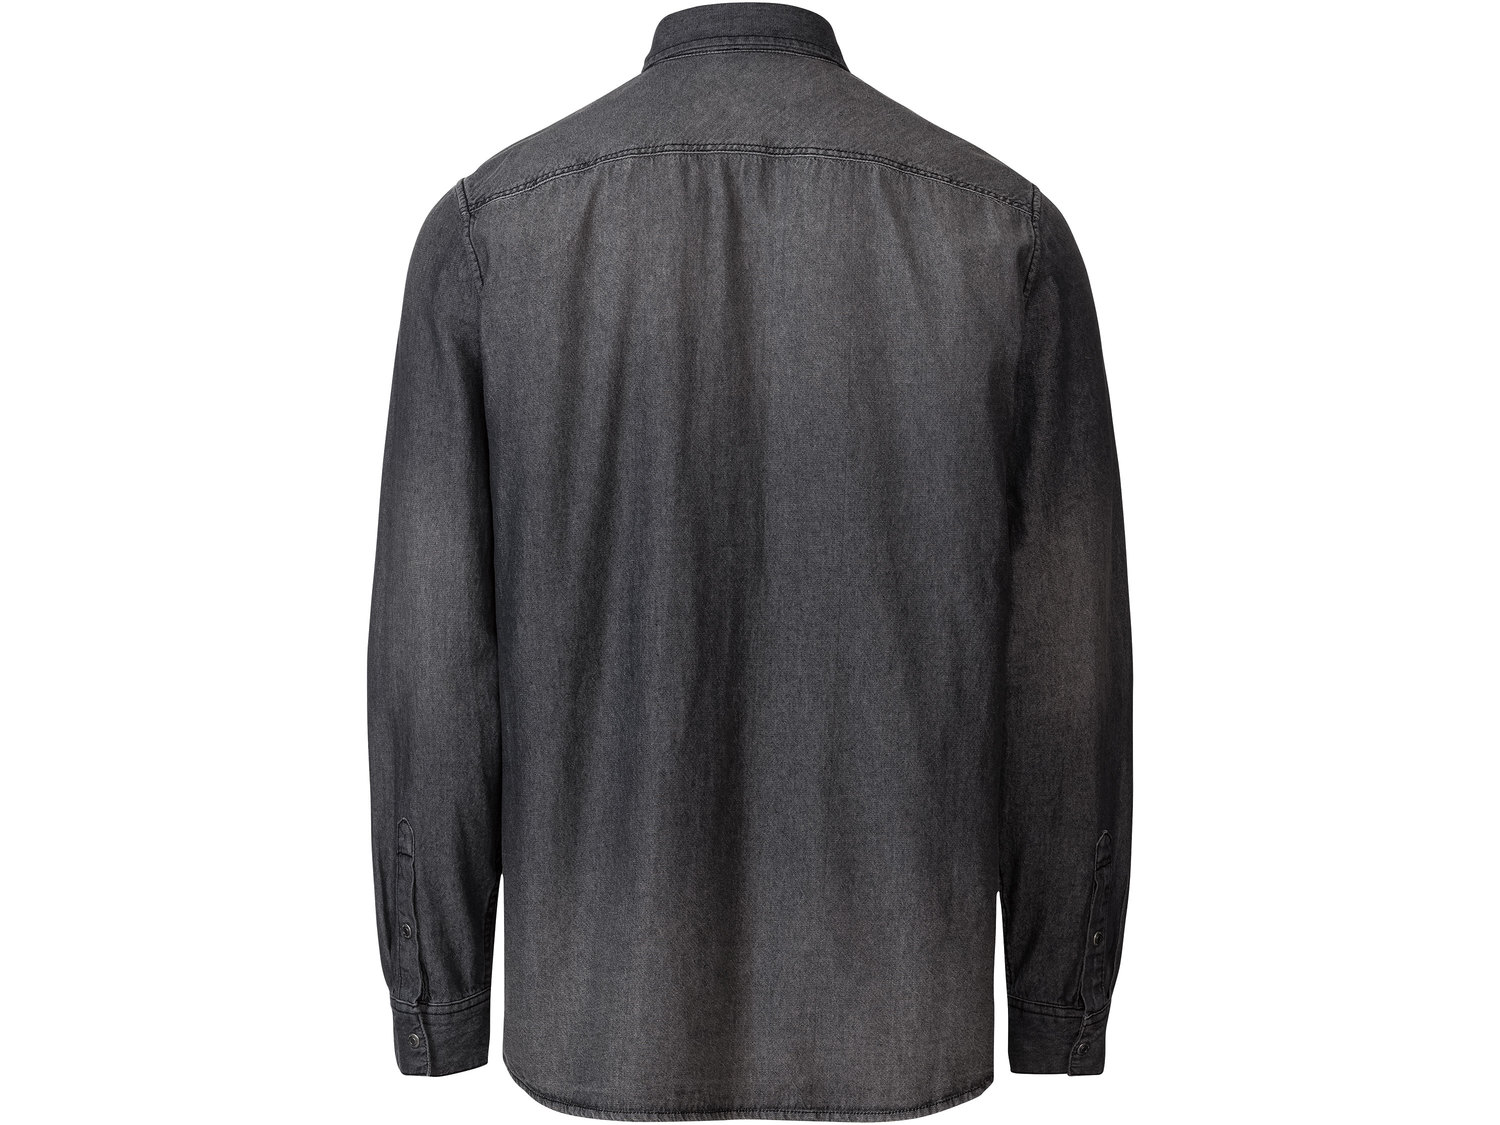 Koszula jeansowa Livergy, cena 39,99 PLN 
- 100% bawełny
- rozmiary: M-XL
- Hohenstein ...